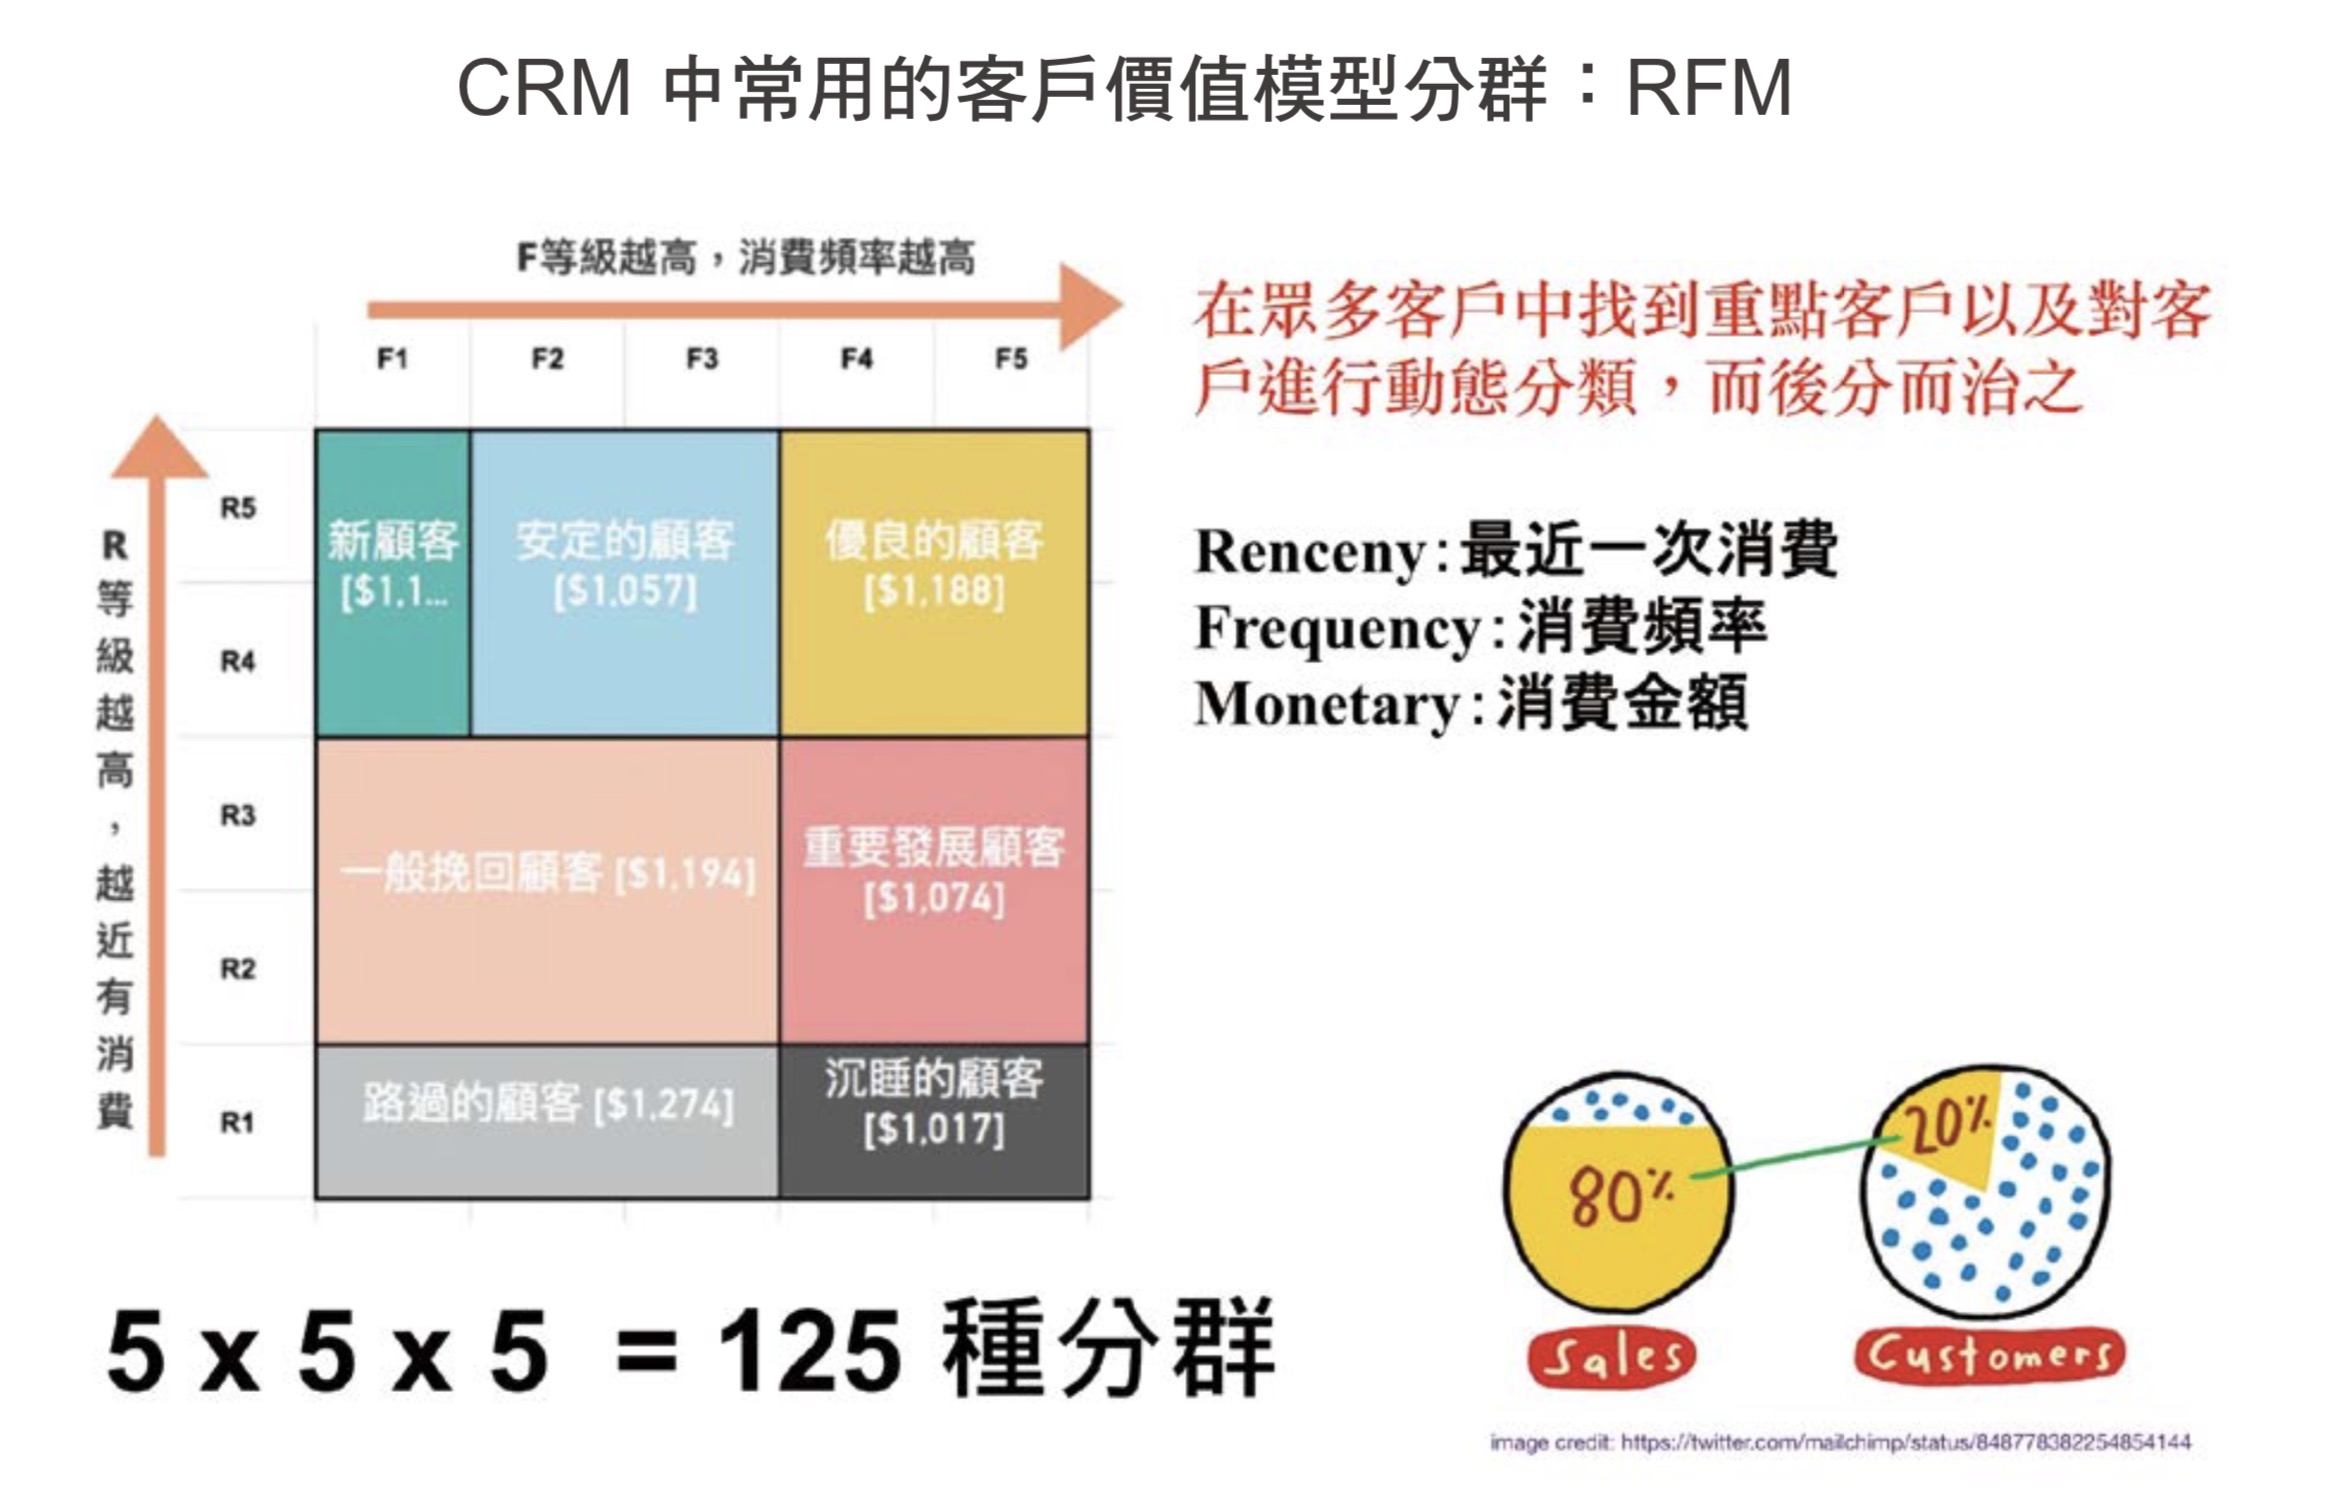 CRM 中常用的客戶價值模型分群:RFM